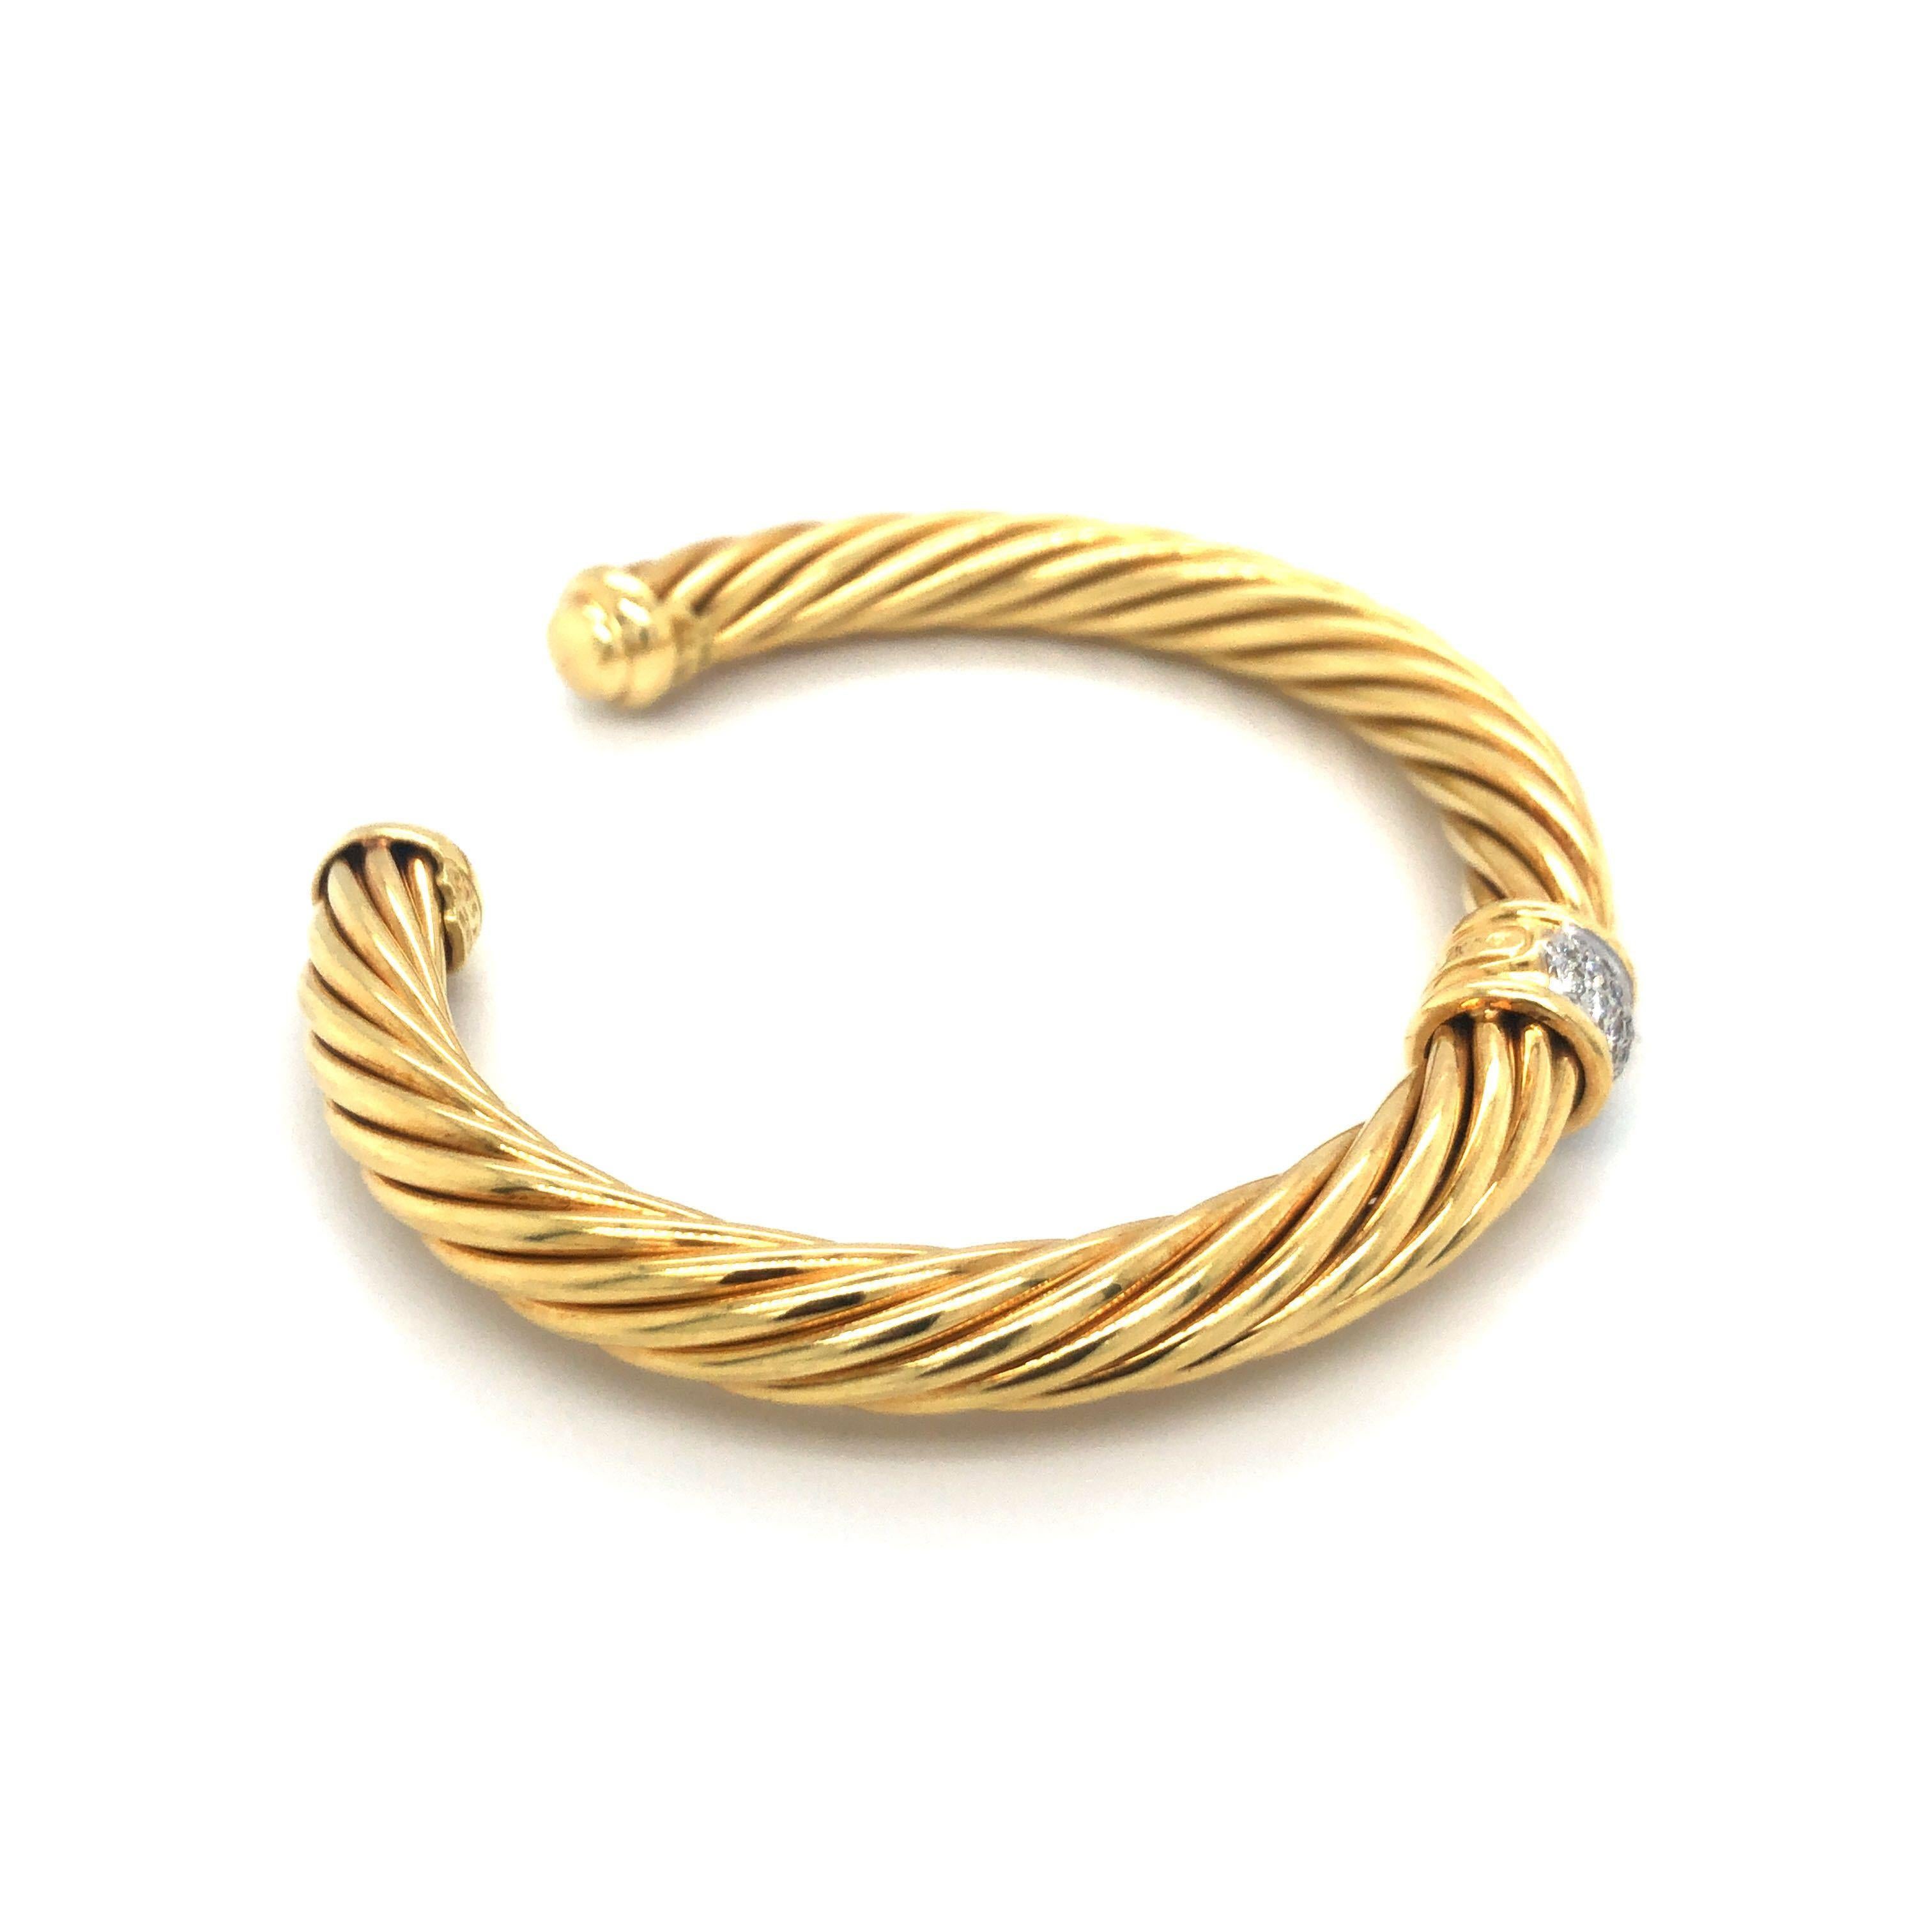 Women's David Yurman 18 Karat Yellow Gold and Diamond Twisted Cable Cuff Bracelet